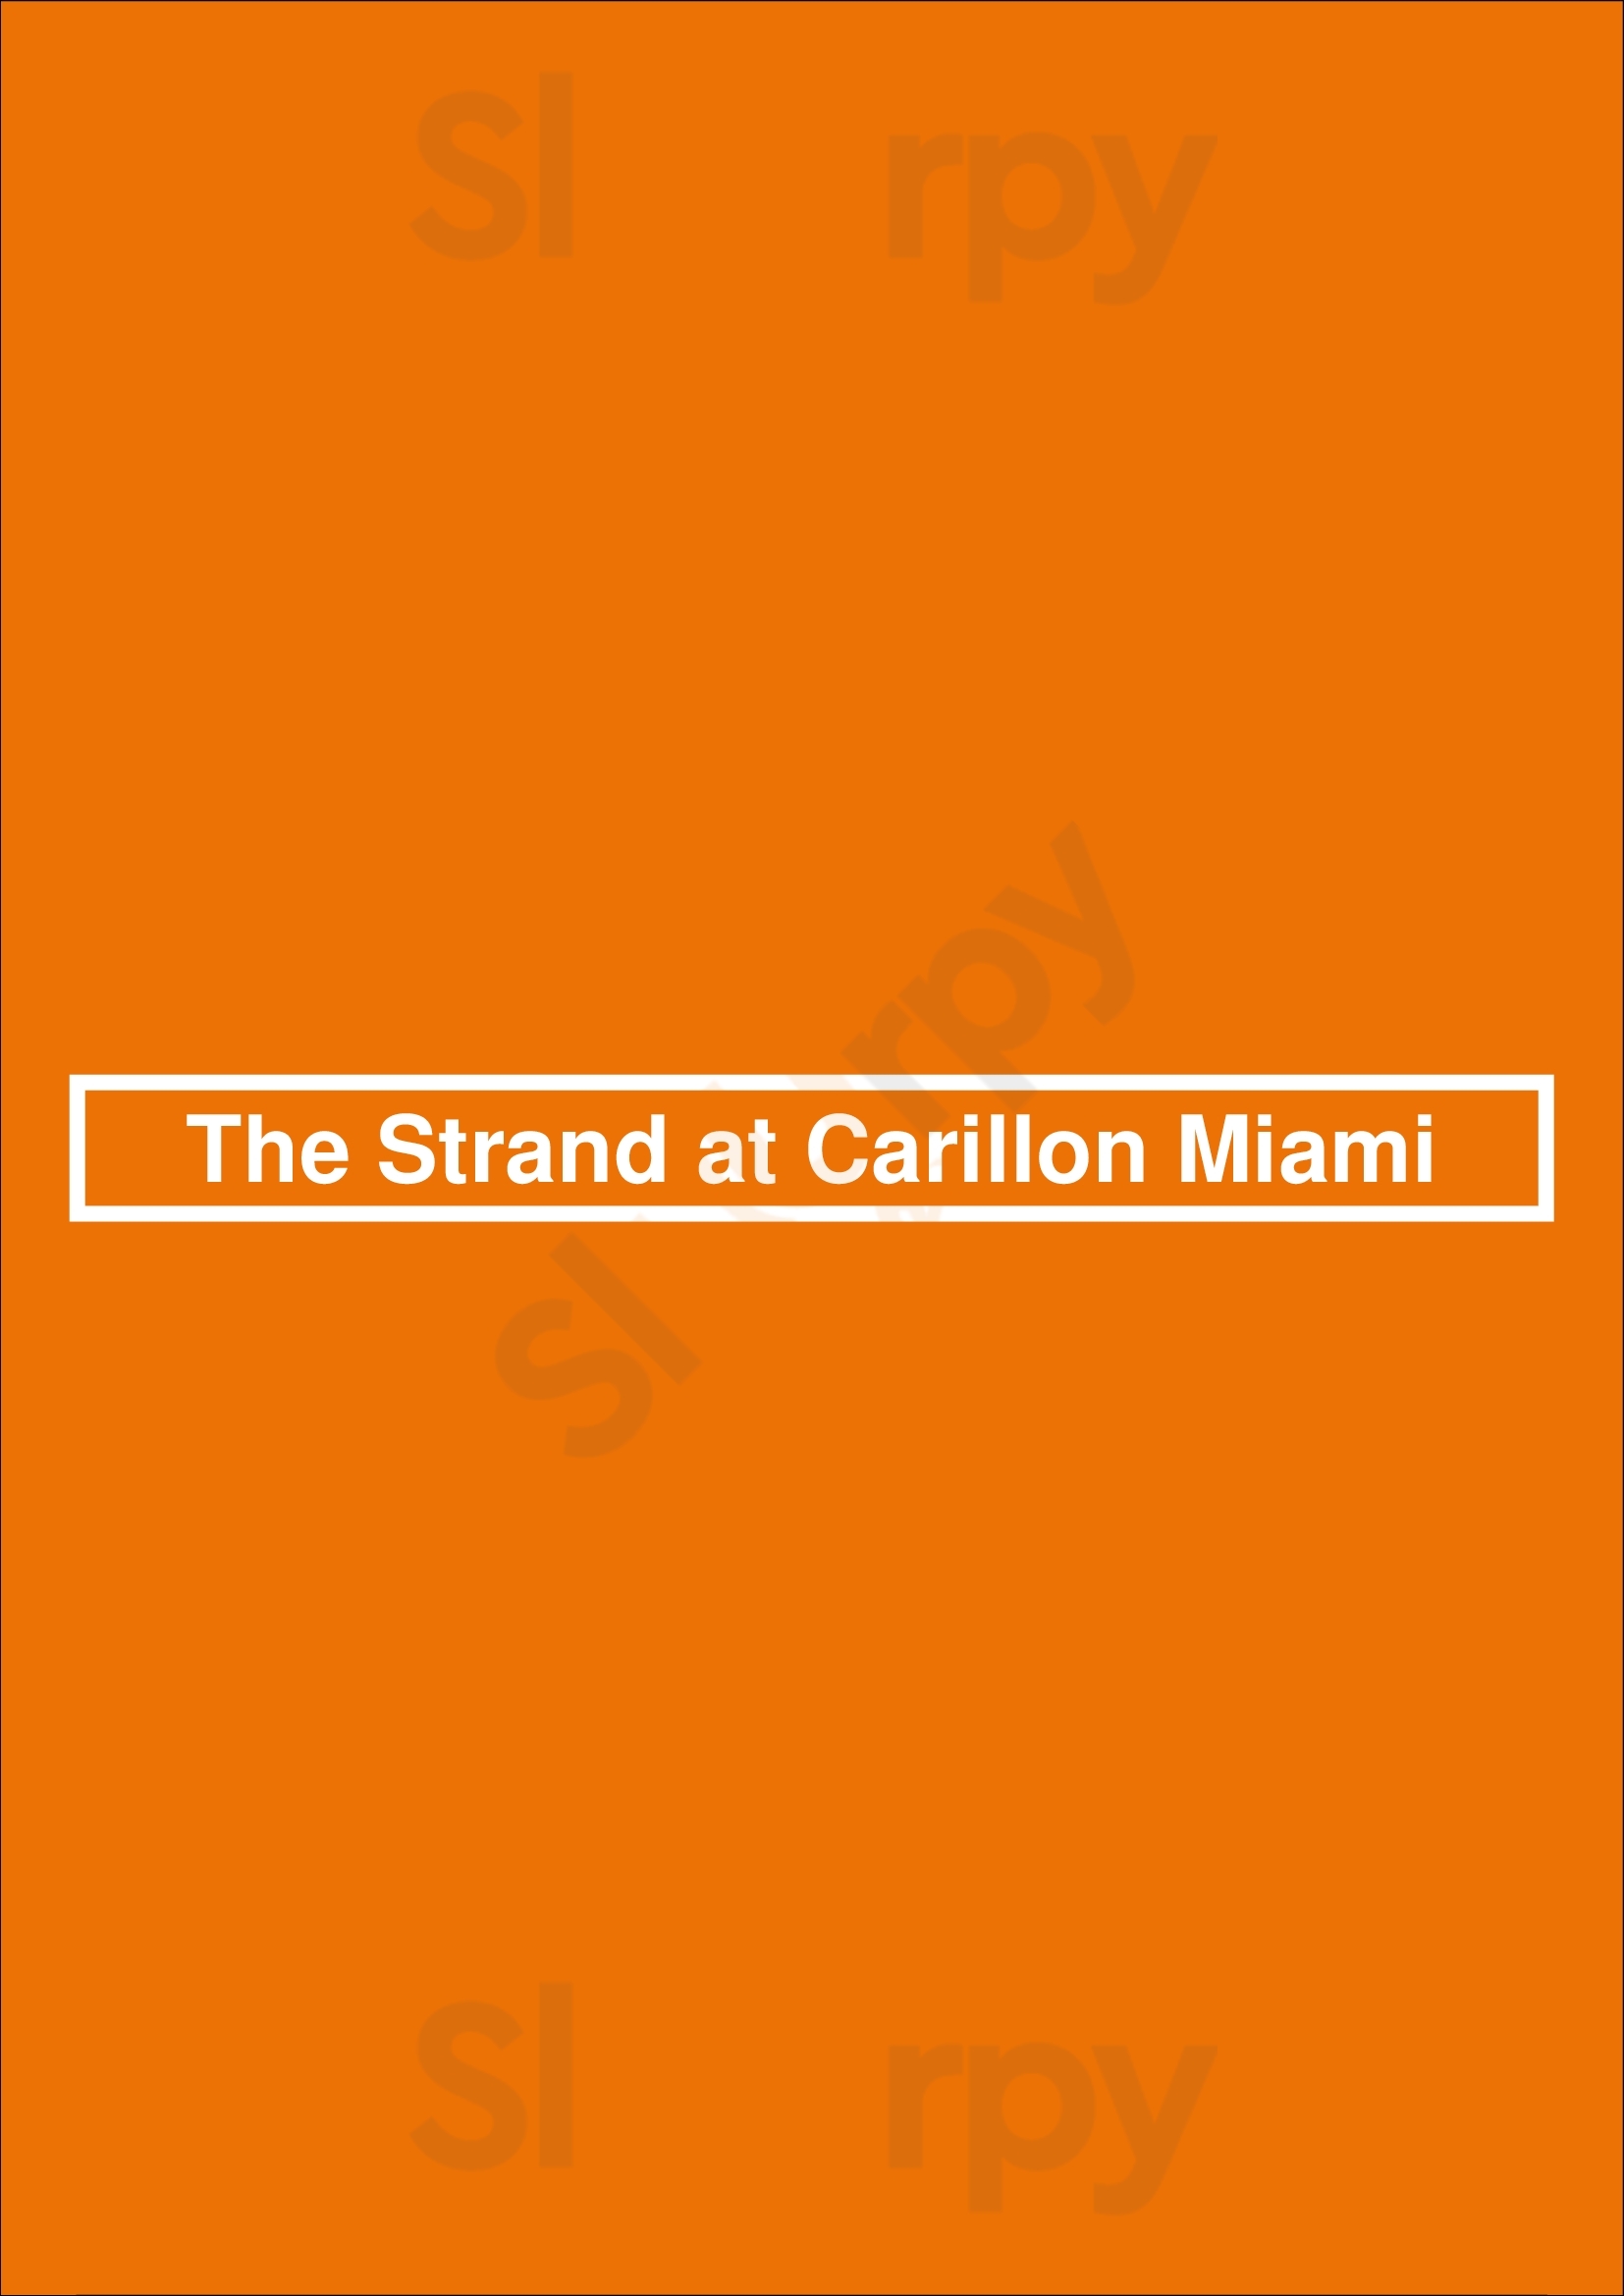 The Strand At Carillon Miami Miami Beach Menu - 1